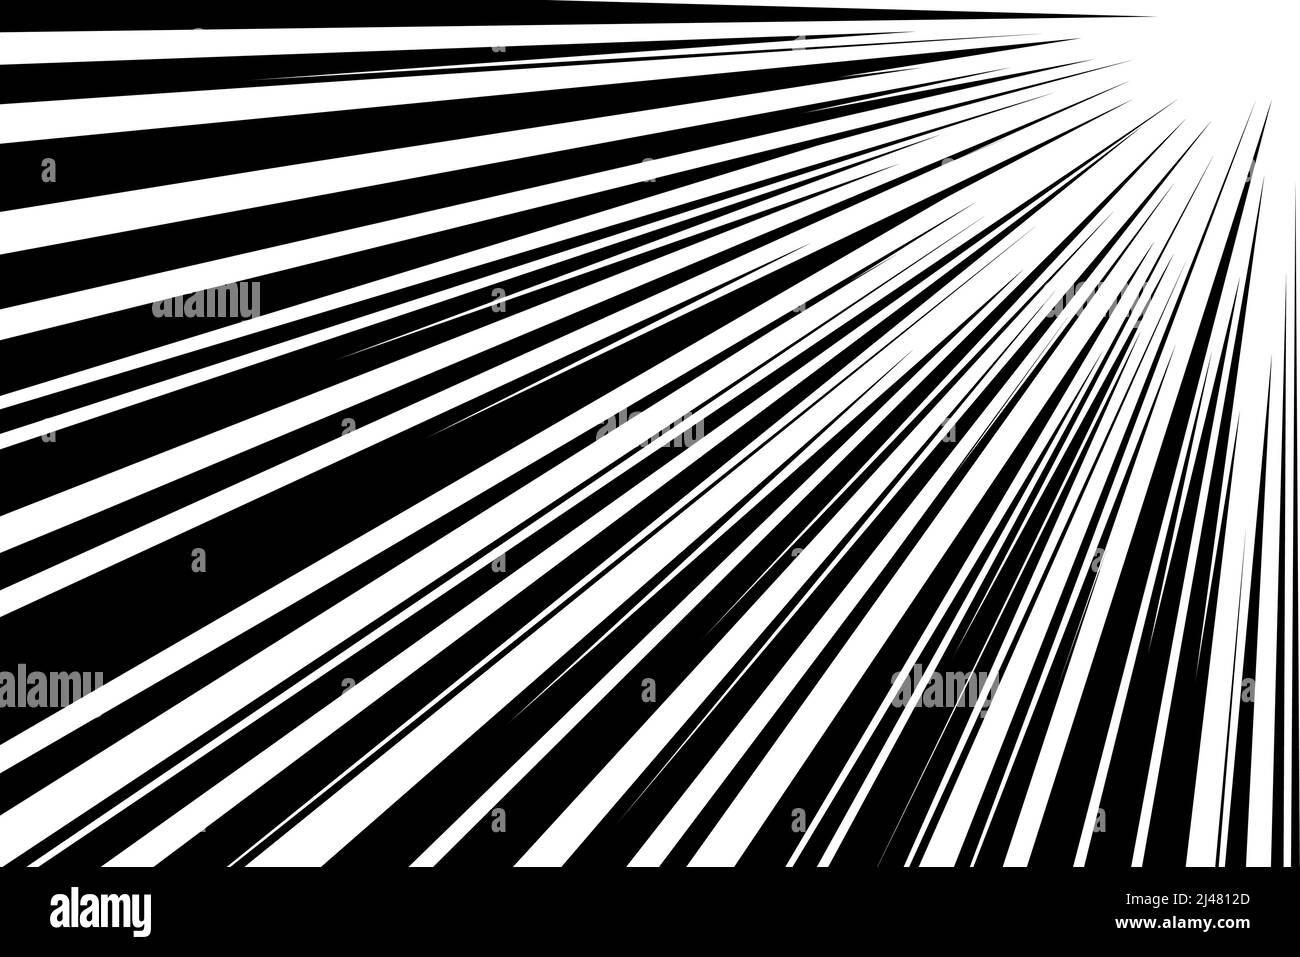 Comic-Streifen radiale Bewegungslinien. Anime-Comics Buch Helden Geschwindigkeit oder Kampf Action Textur Strahlen. Manga Cartoon Zeichnung Explosionen Hintergrund. Vektorgrafik Tinte eps Illustration Stock Vektor